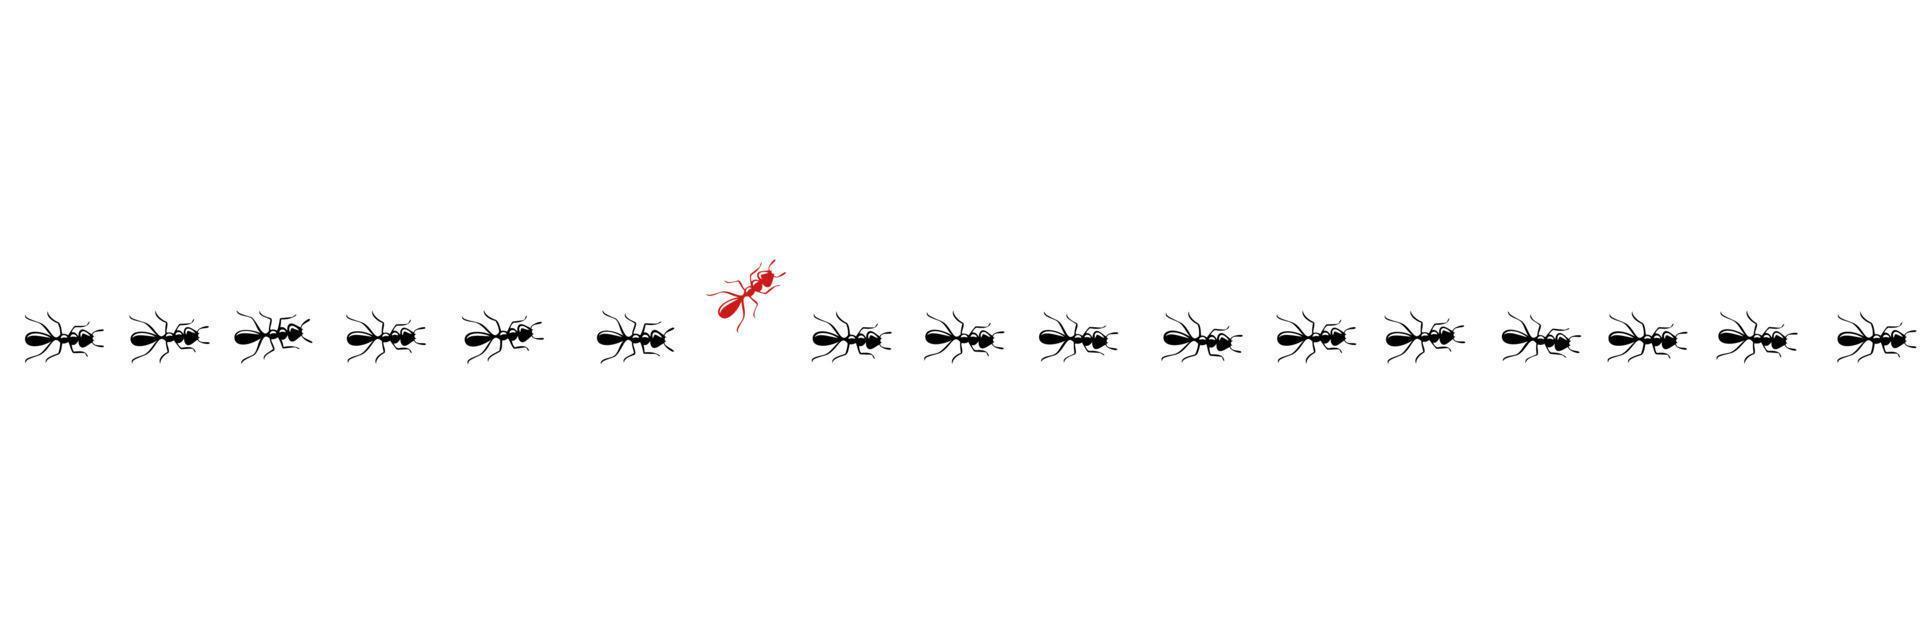 myror spår med en växlare. tror annorlunda och vara unik begrepp. vektor illustration